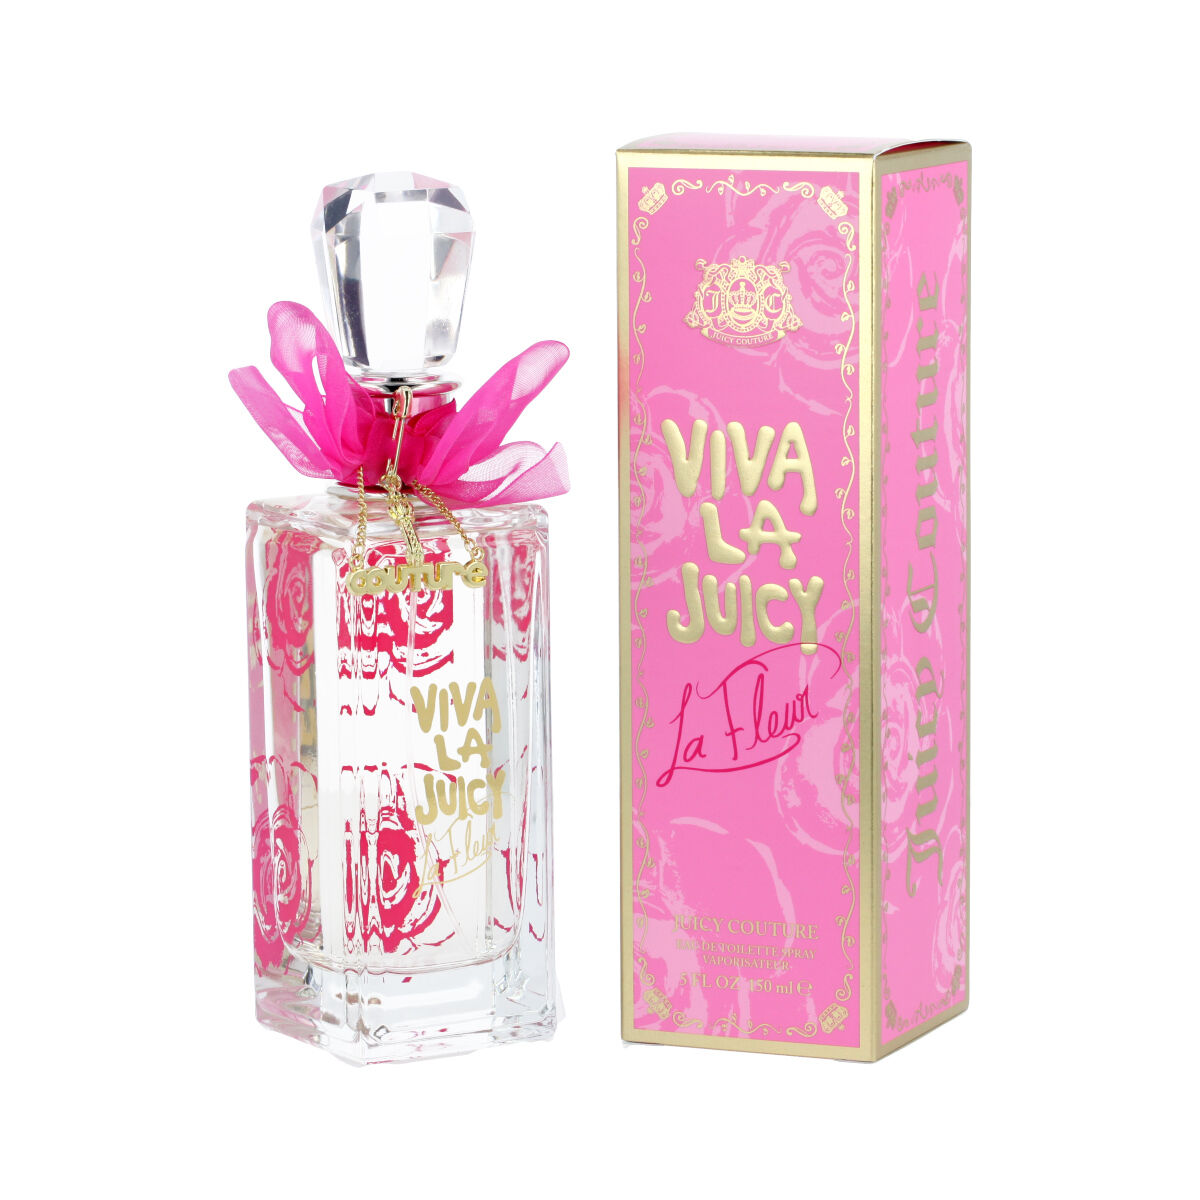 Parfum Femme Juicy Couture EDT Viva La Juicy La Fleur 150 ml